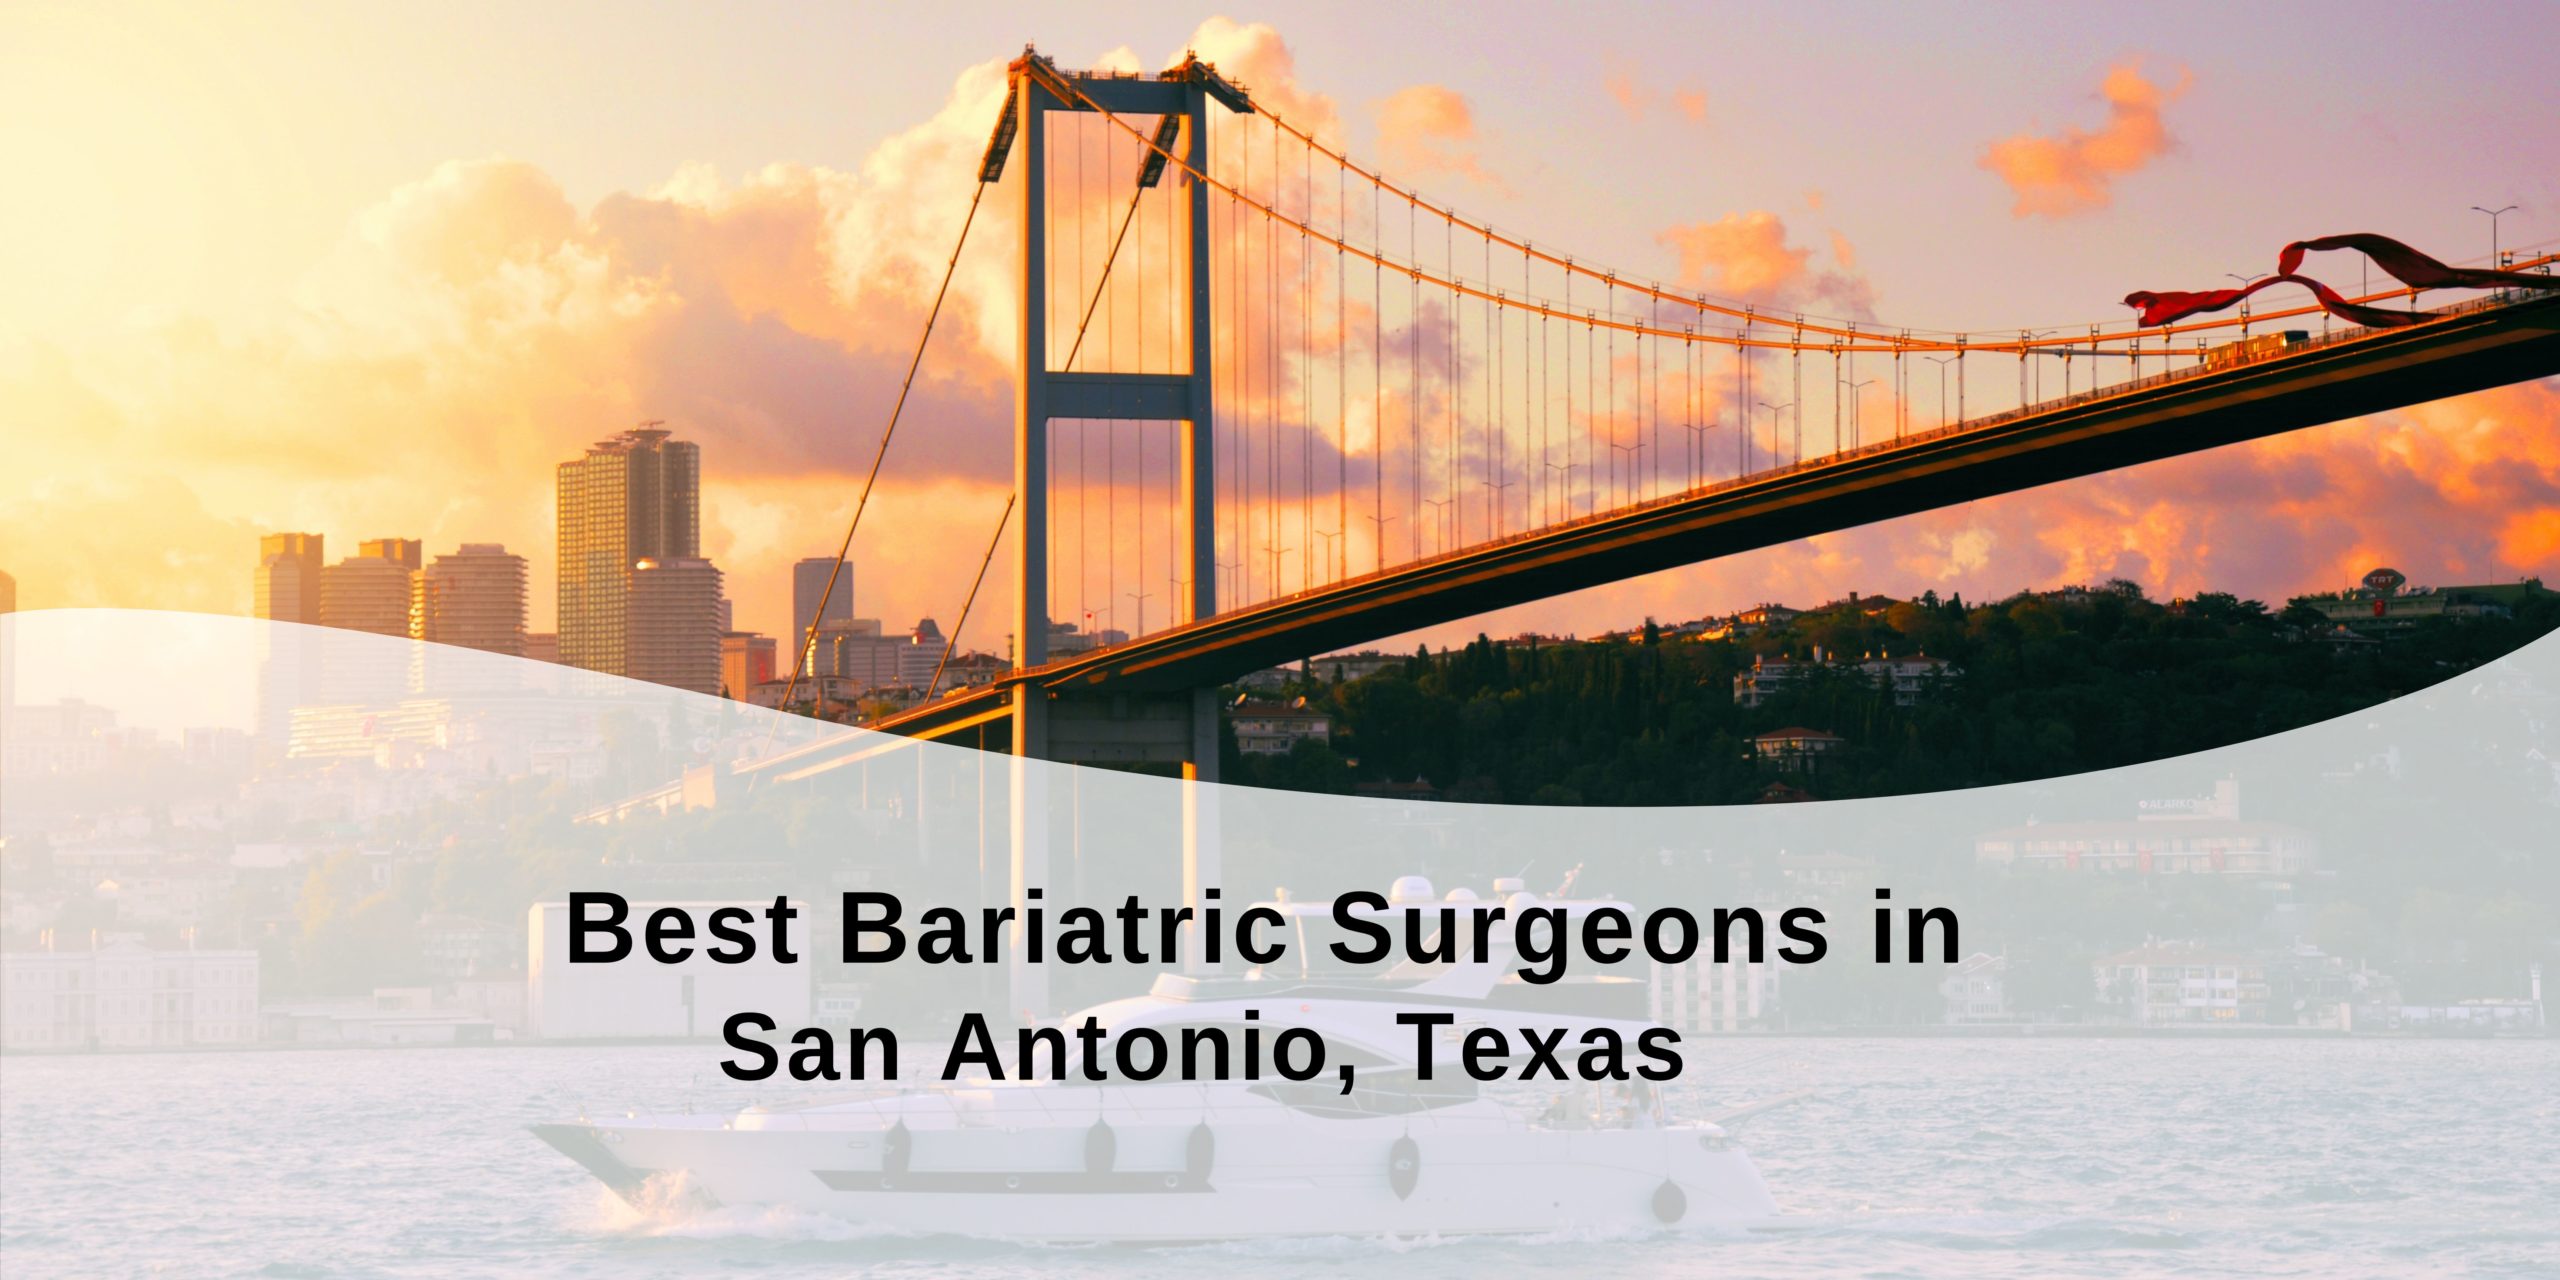 Best Bariatric Surgeons in San Antonio, Texas